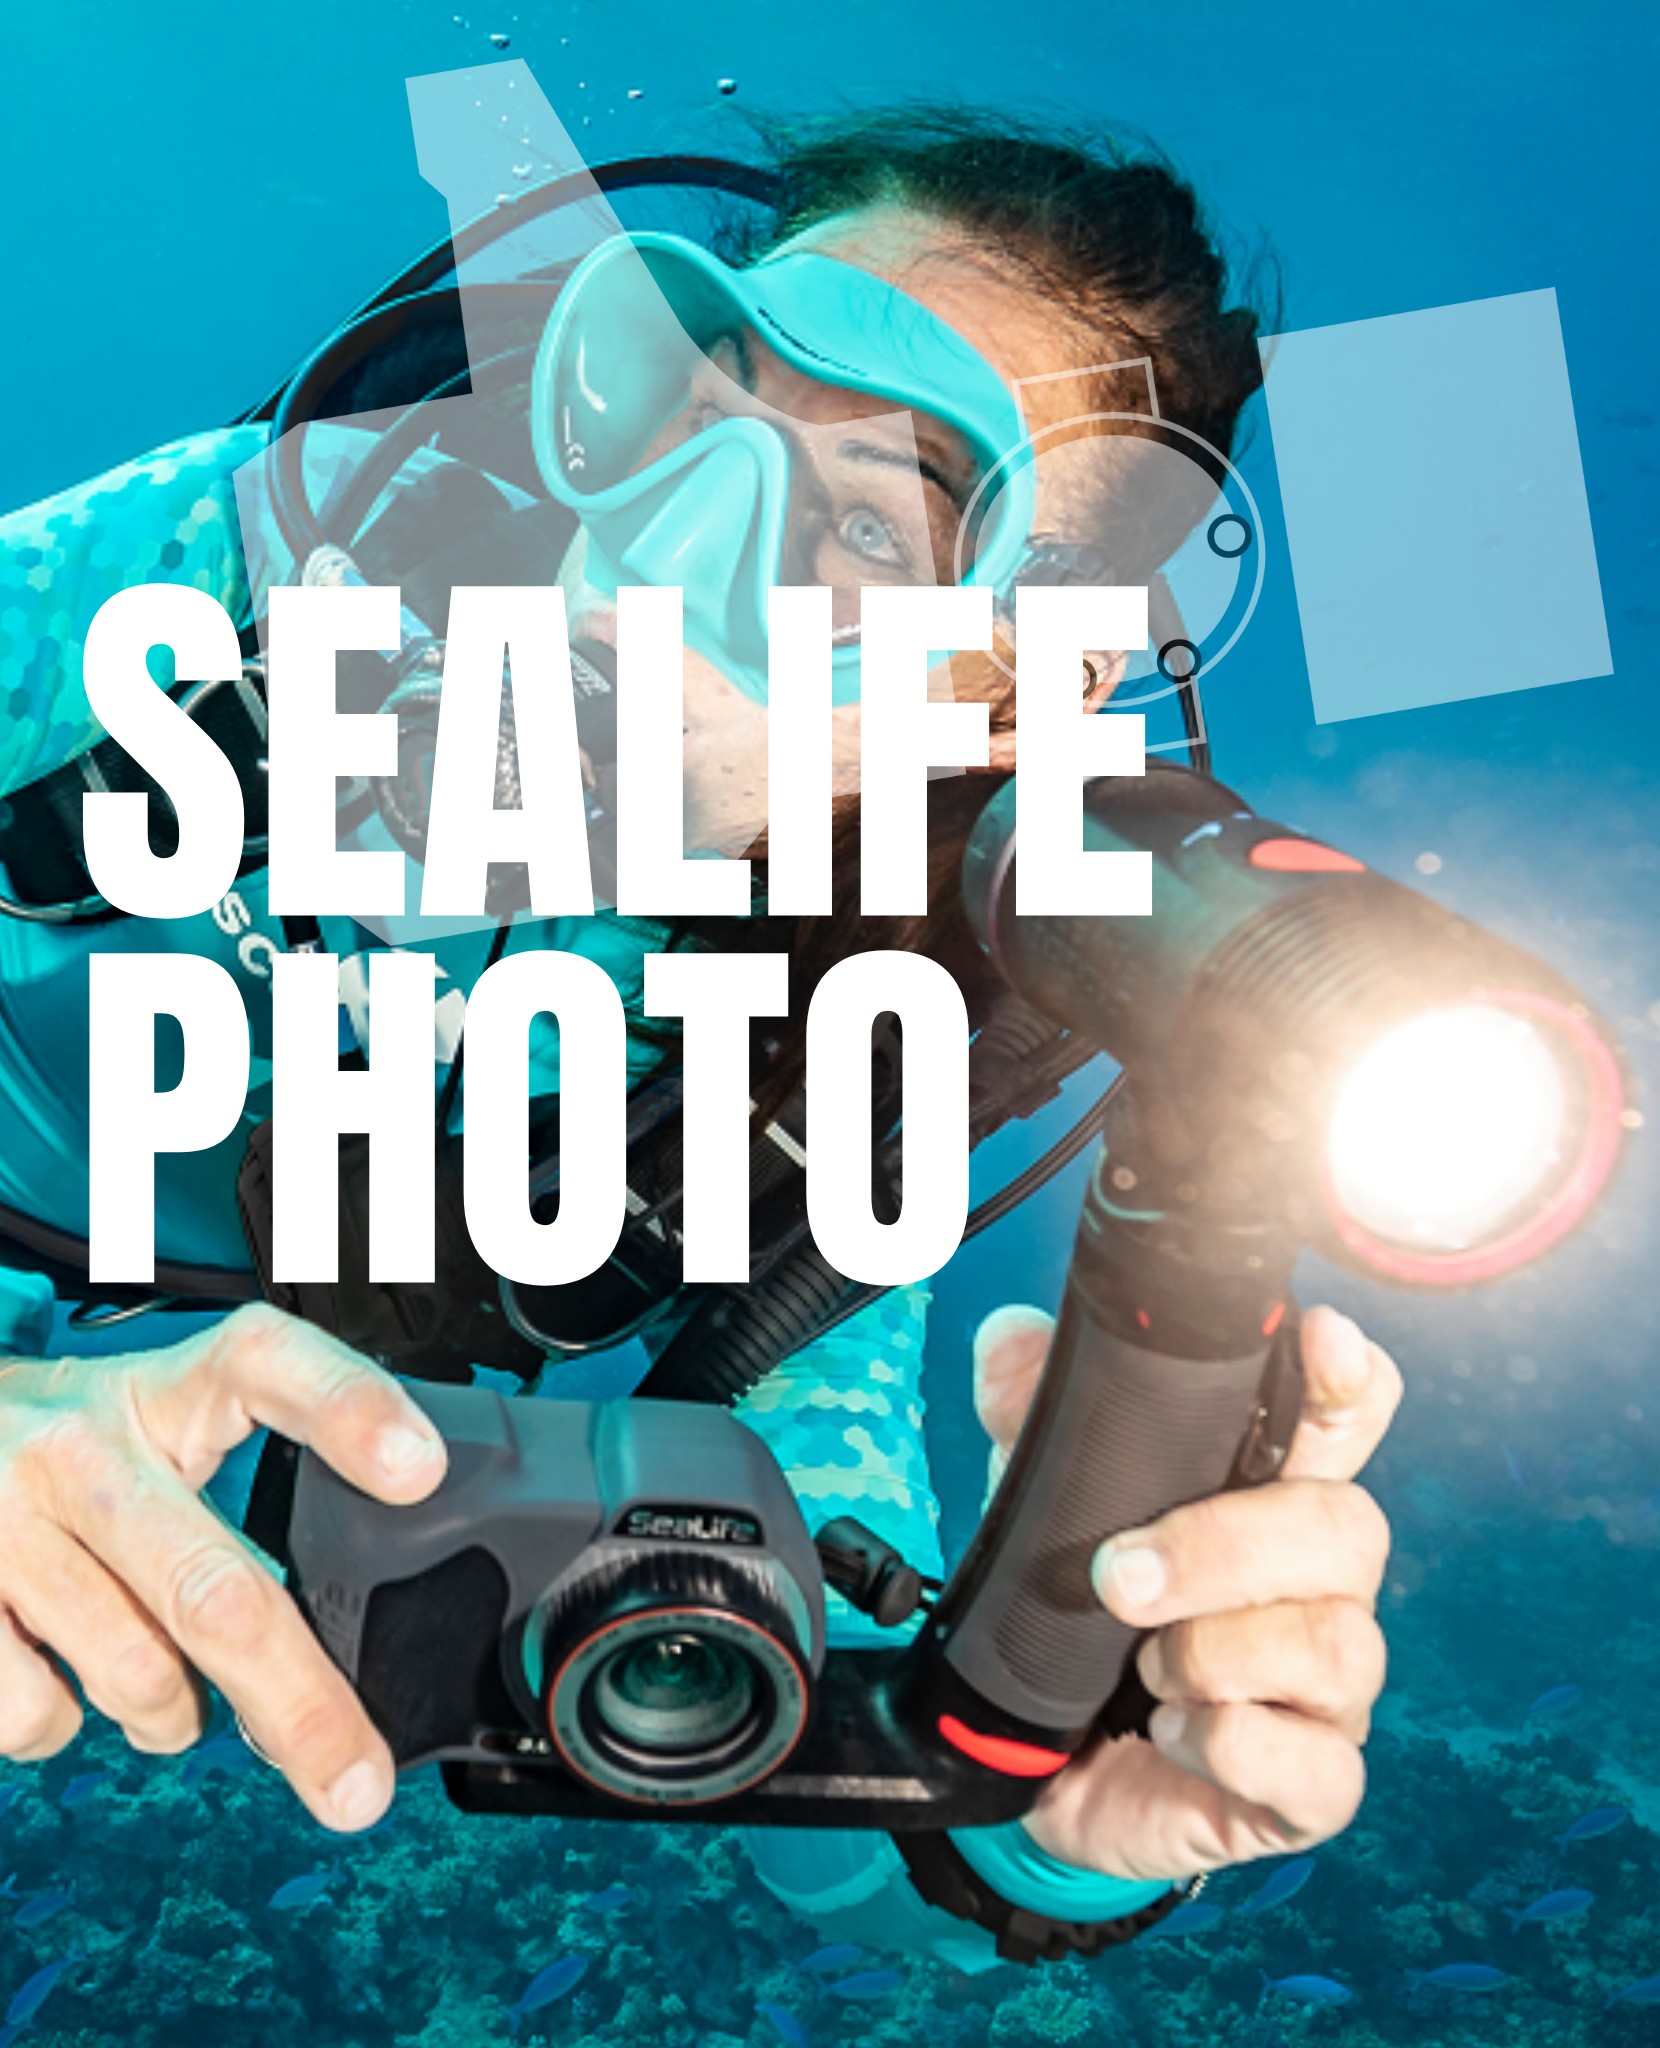 | Dans votre magasin 📣🐙|
Retrouvez les produits SeaLife et SeaDragon en magasin et sur notre #webshop 
Lampes, flashs, lentilles, filtres, caméras, appareils photos, platines, bras, caissons étanches... Tout ce sont vous avez besoin pour vous adonner à la photographie et vidéo sous-marine ! 
•
👉 https://retoursurface.fr/brand/41-sealife
•
#scubaa #scubalife #scubadive #scubaworld #scubadiver #scubaphoto #scubadiving #scubadivers #scubaadventures #dive #diving #divinglife #plongée #plongeetechnique #plongeebouteille #plongéesousmarine #plongéesousmarine #mondesousmarin #sealife #seadragon